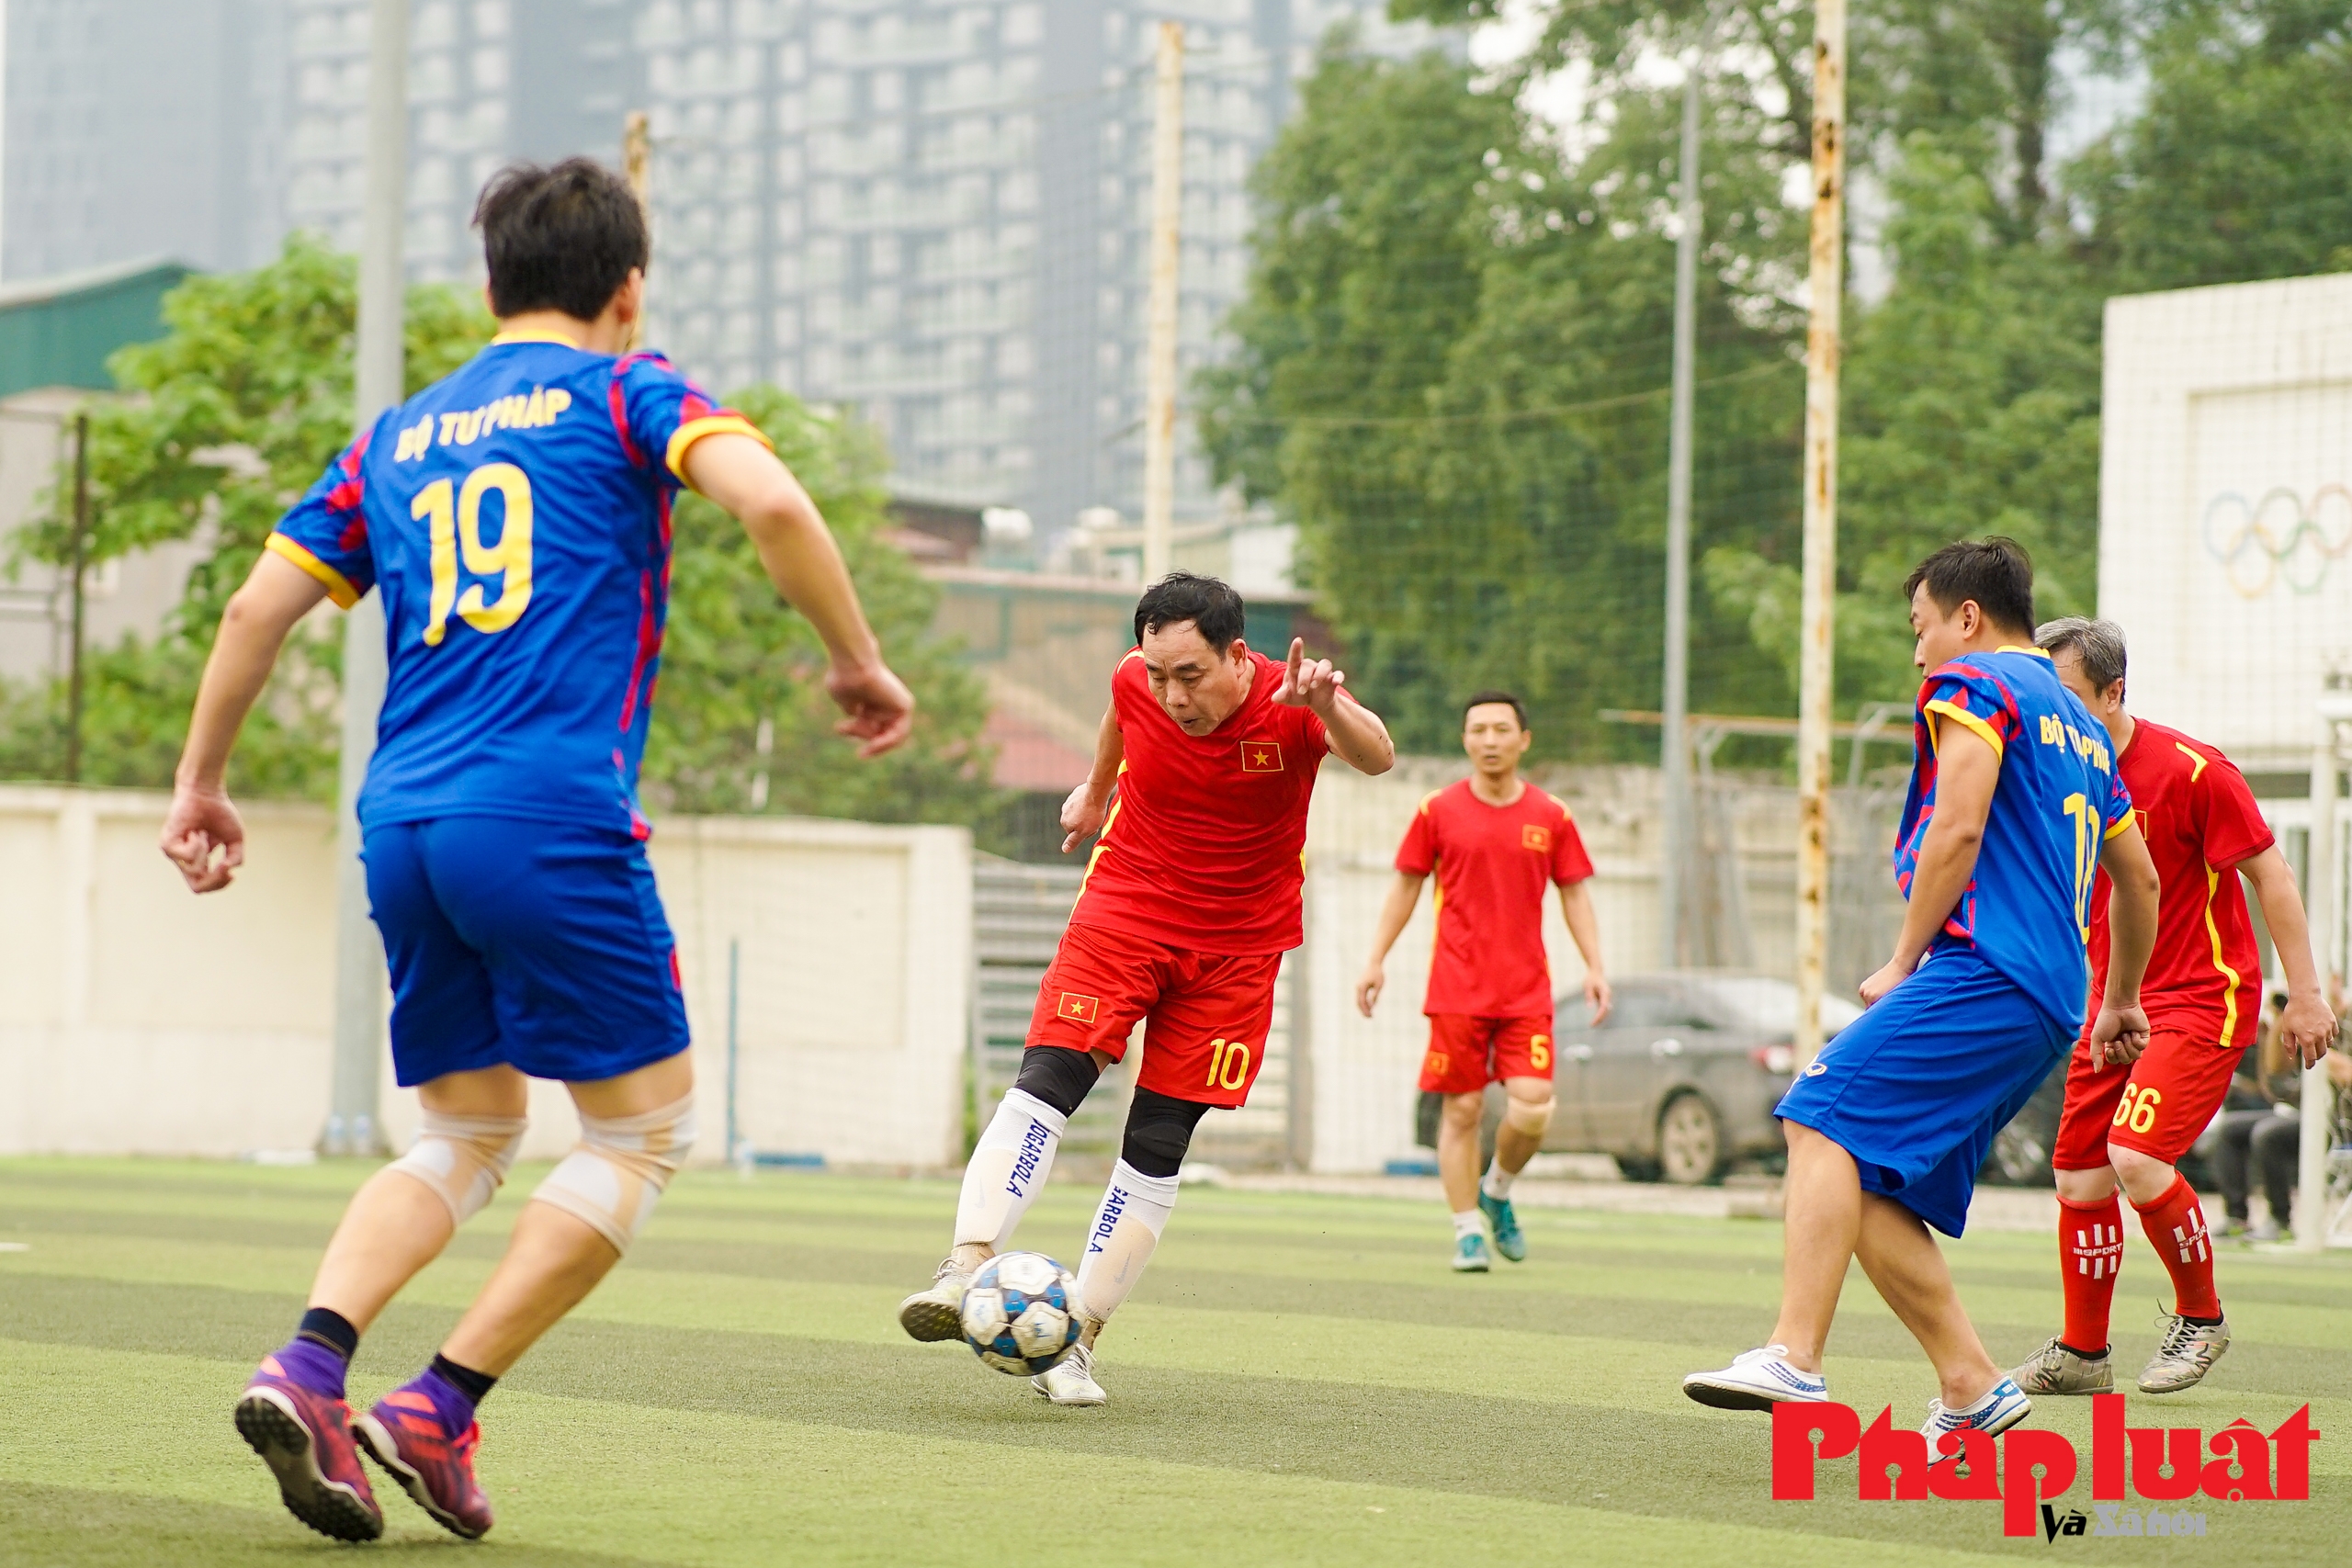 Hà Nội tổ chức giải bóng đá giao hữu mở rộng năm 2023